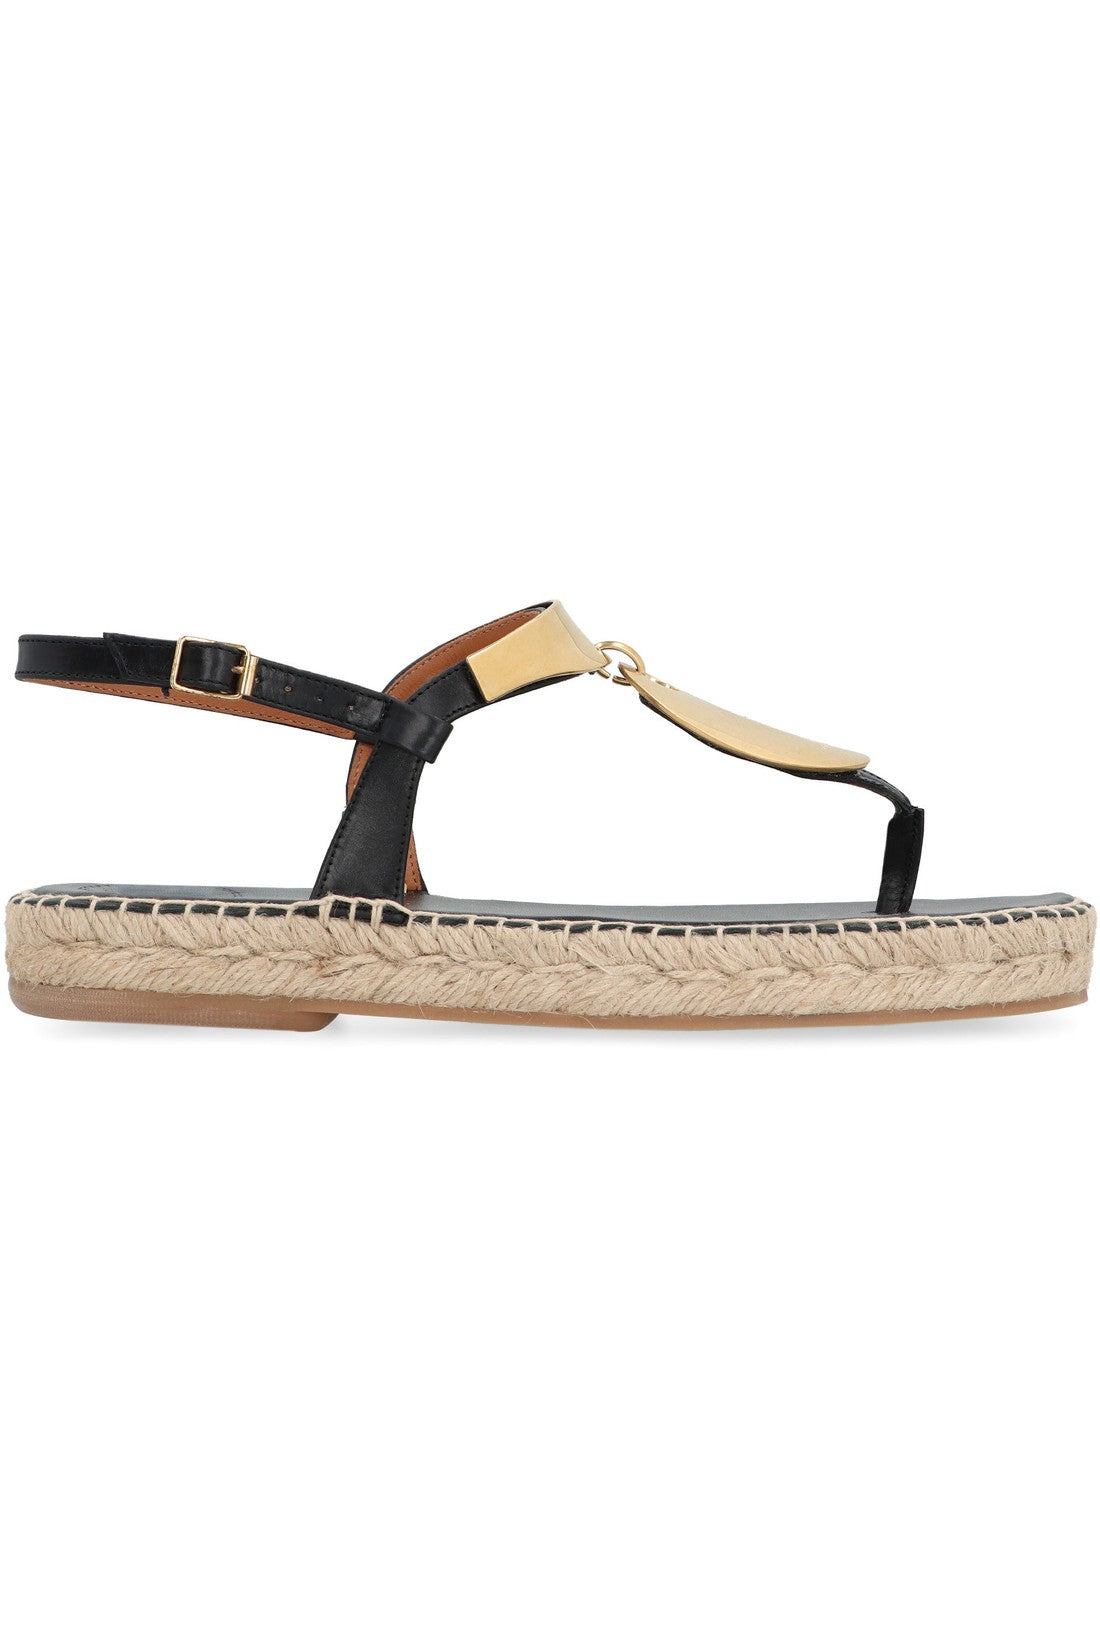 Chloé-OUTLET-SALE-Pema Leather sandals-ARCHIVIST